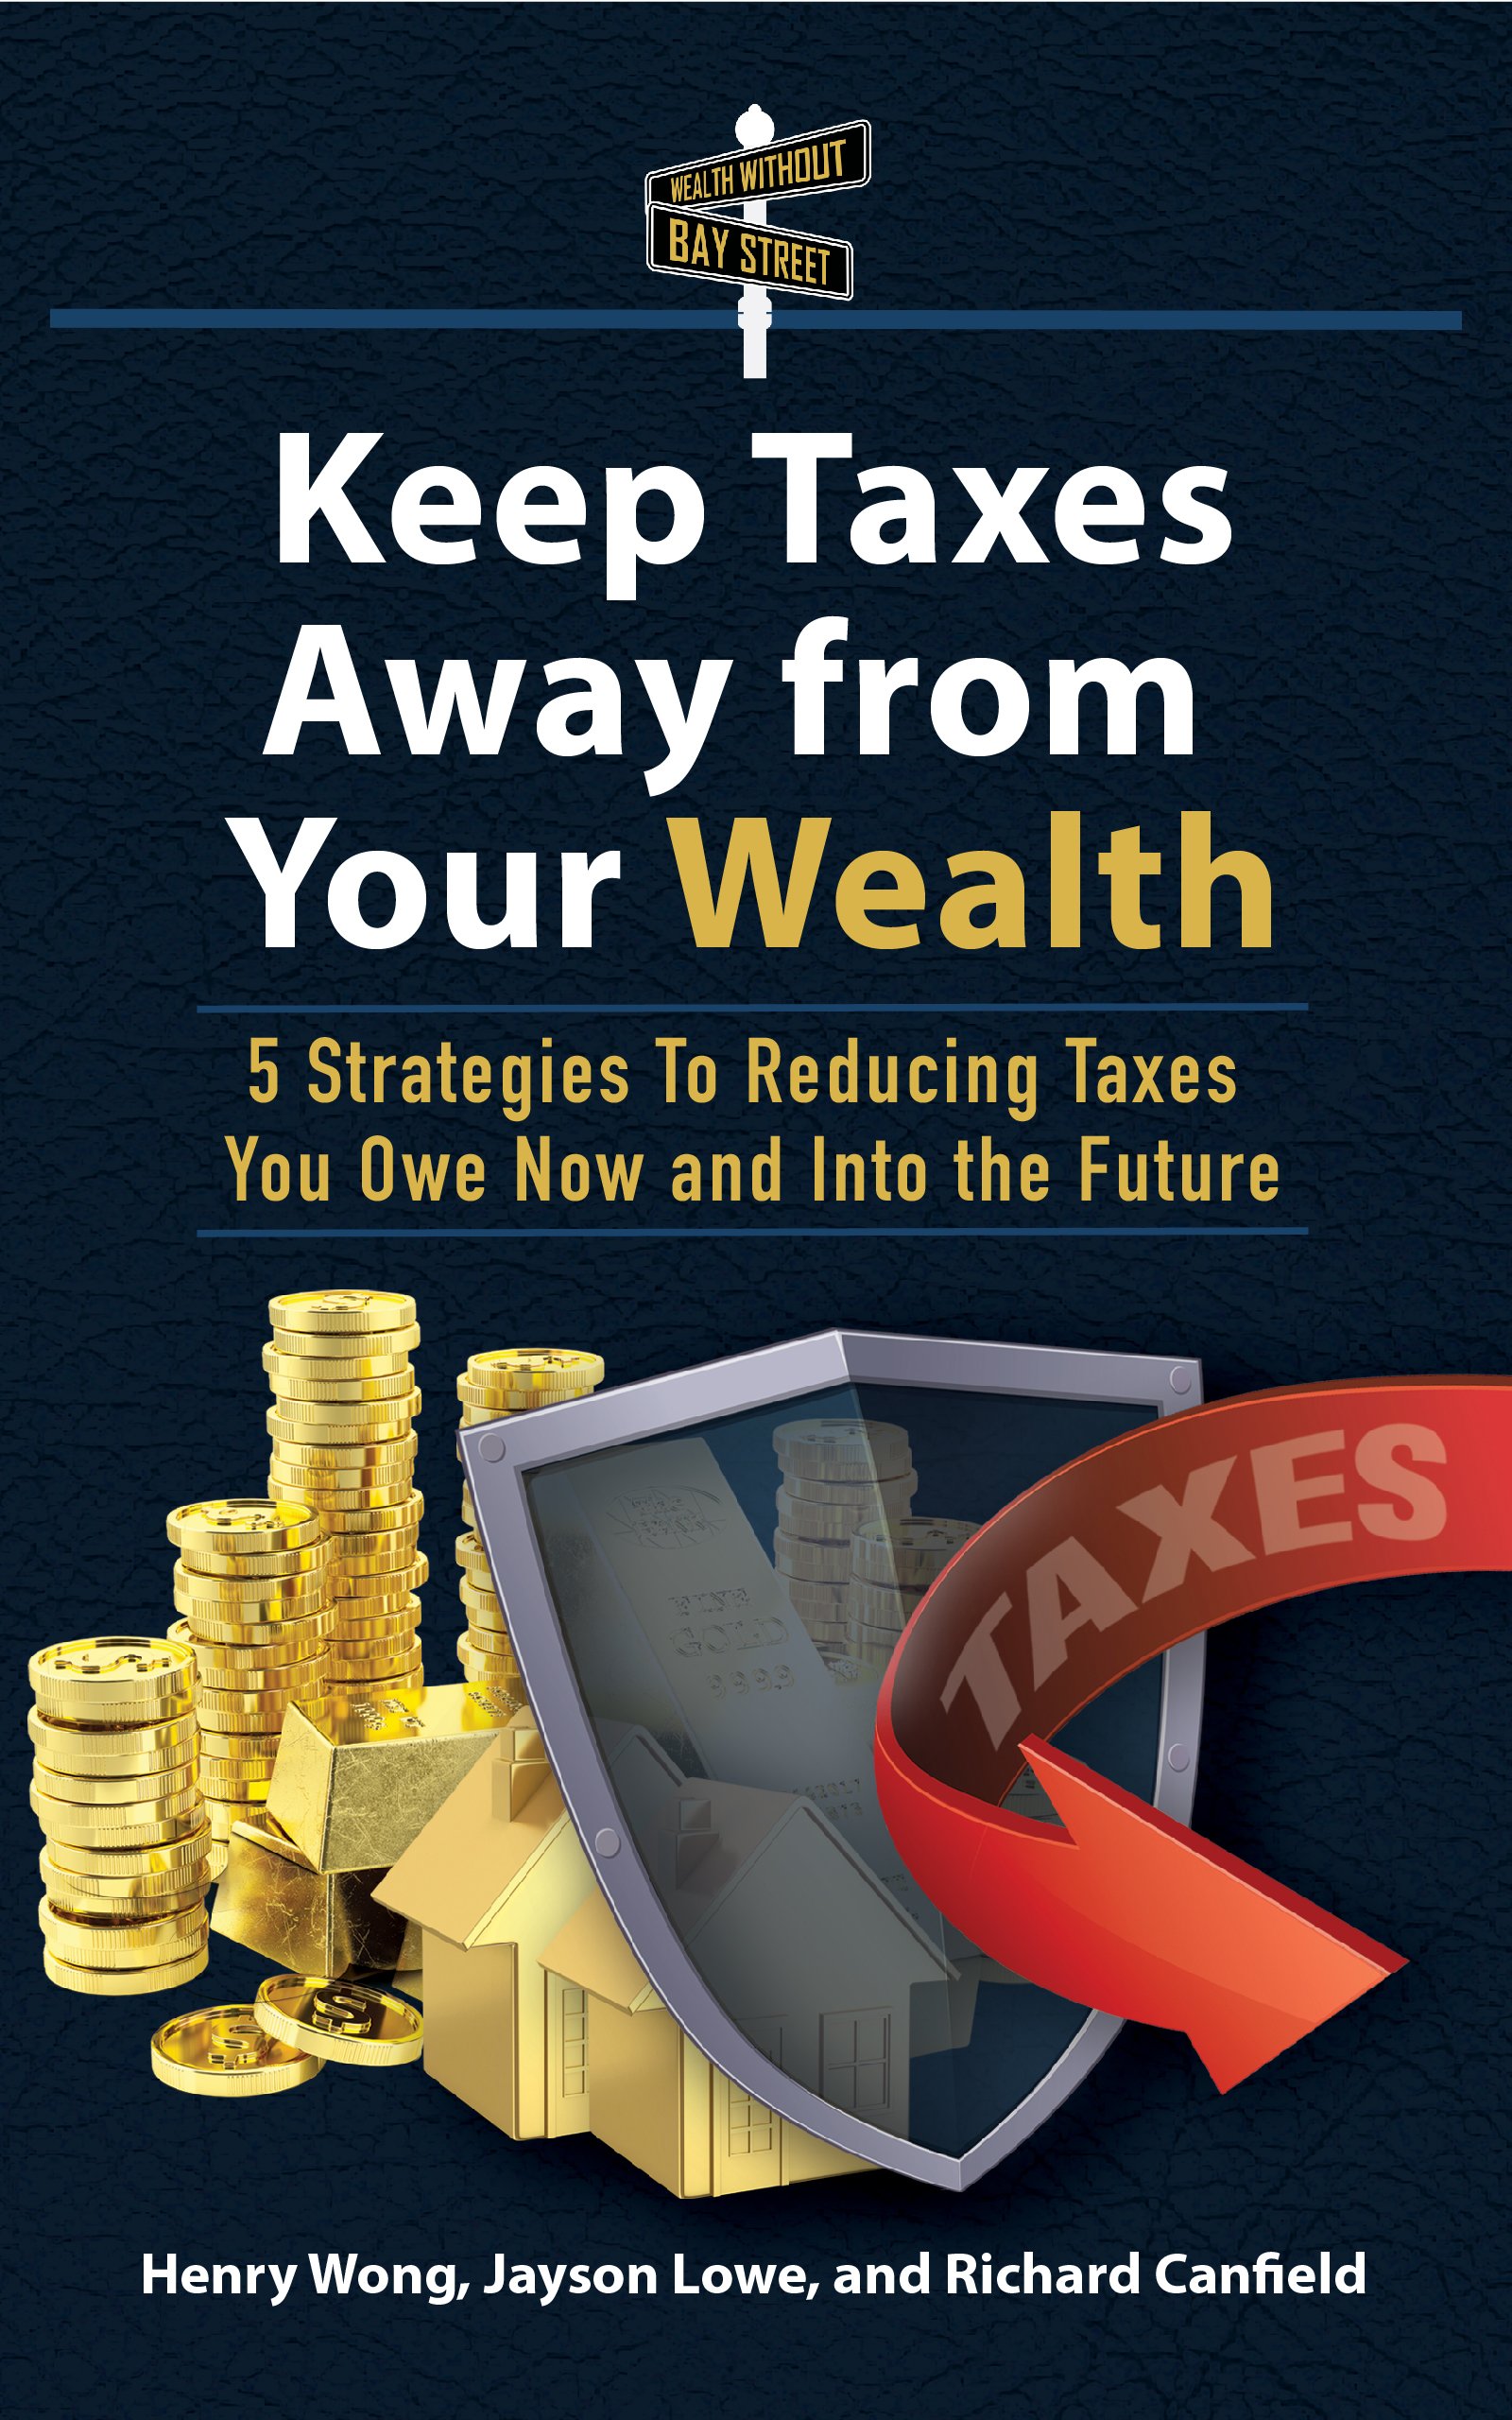 Keep Taxes ebook cover-01.jpg